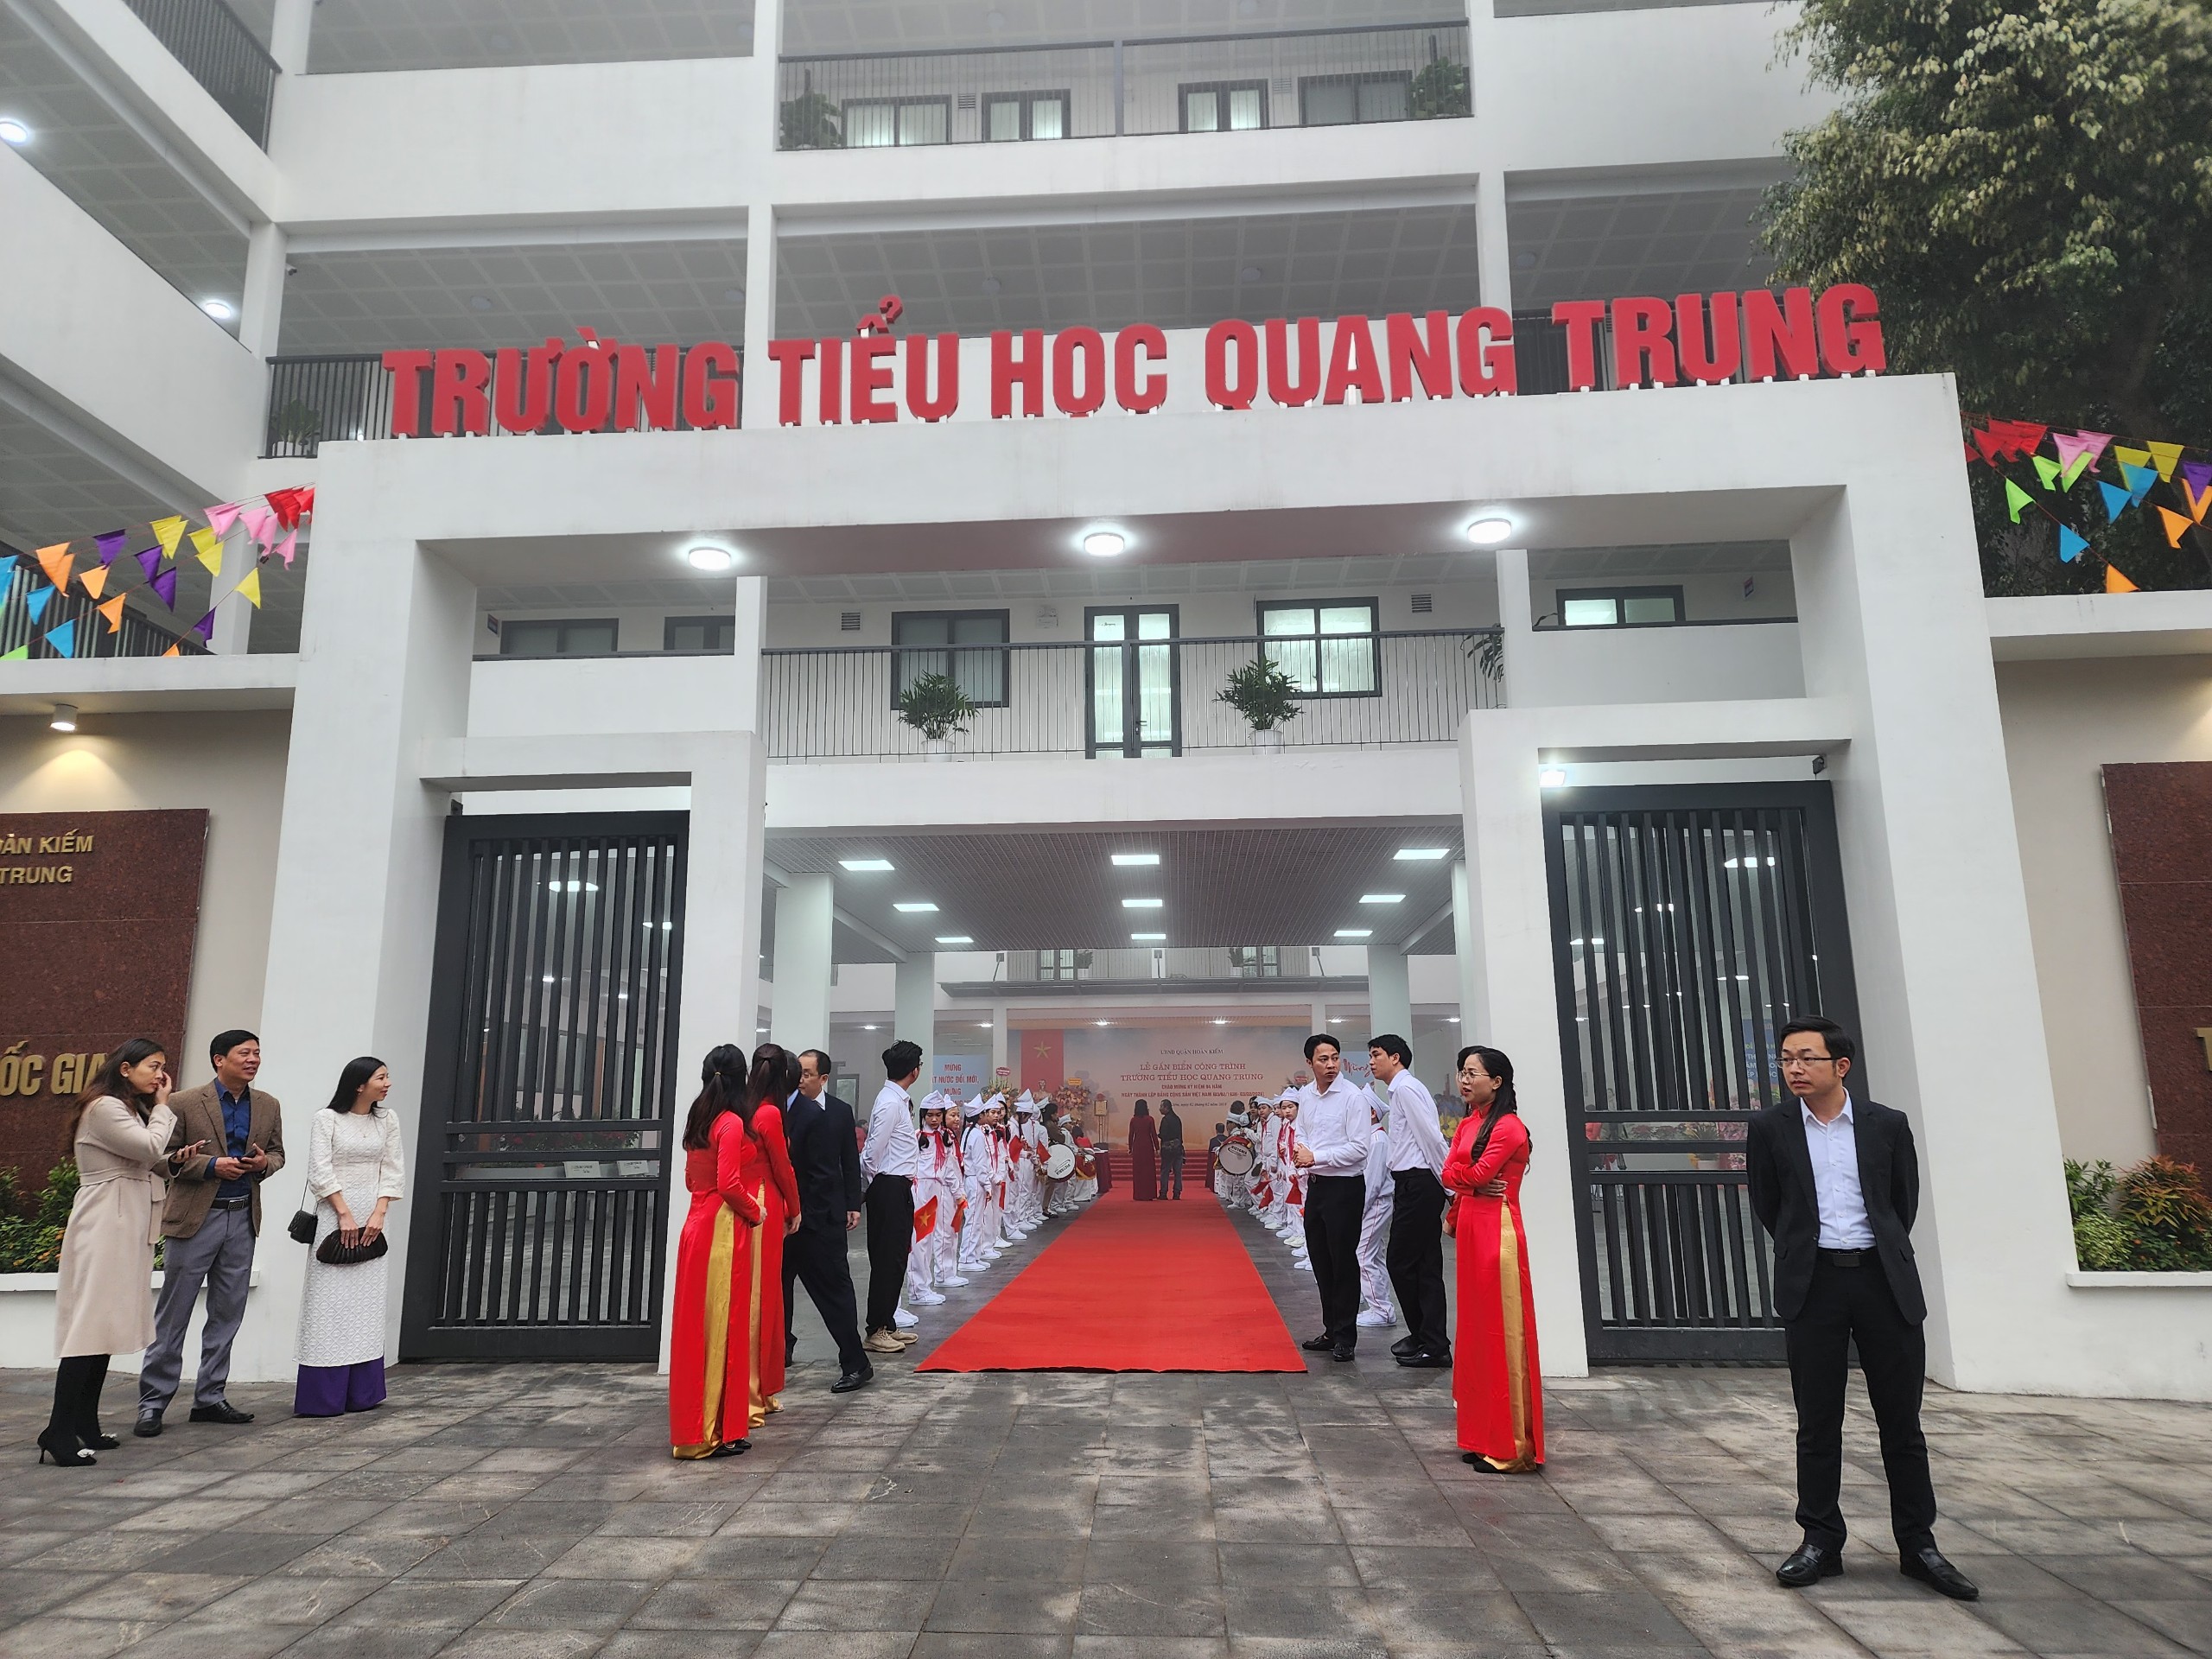 Hà Nội gắn biển công trình trường tiểu học Quang Trung